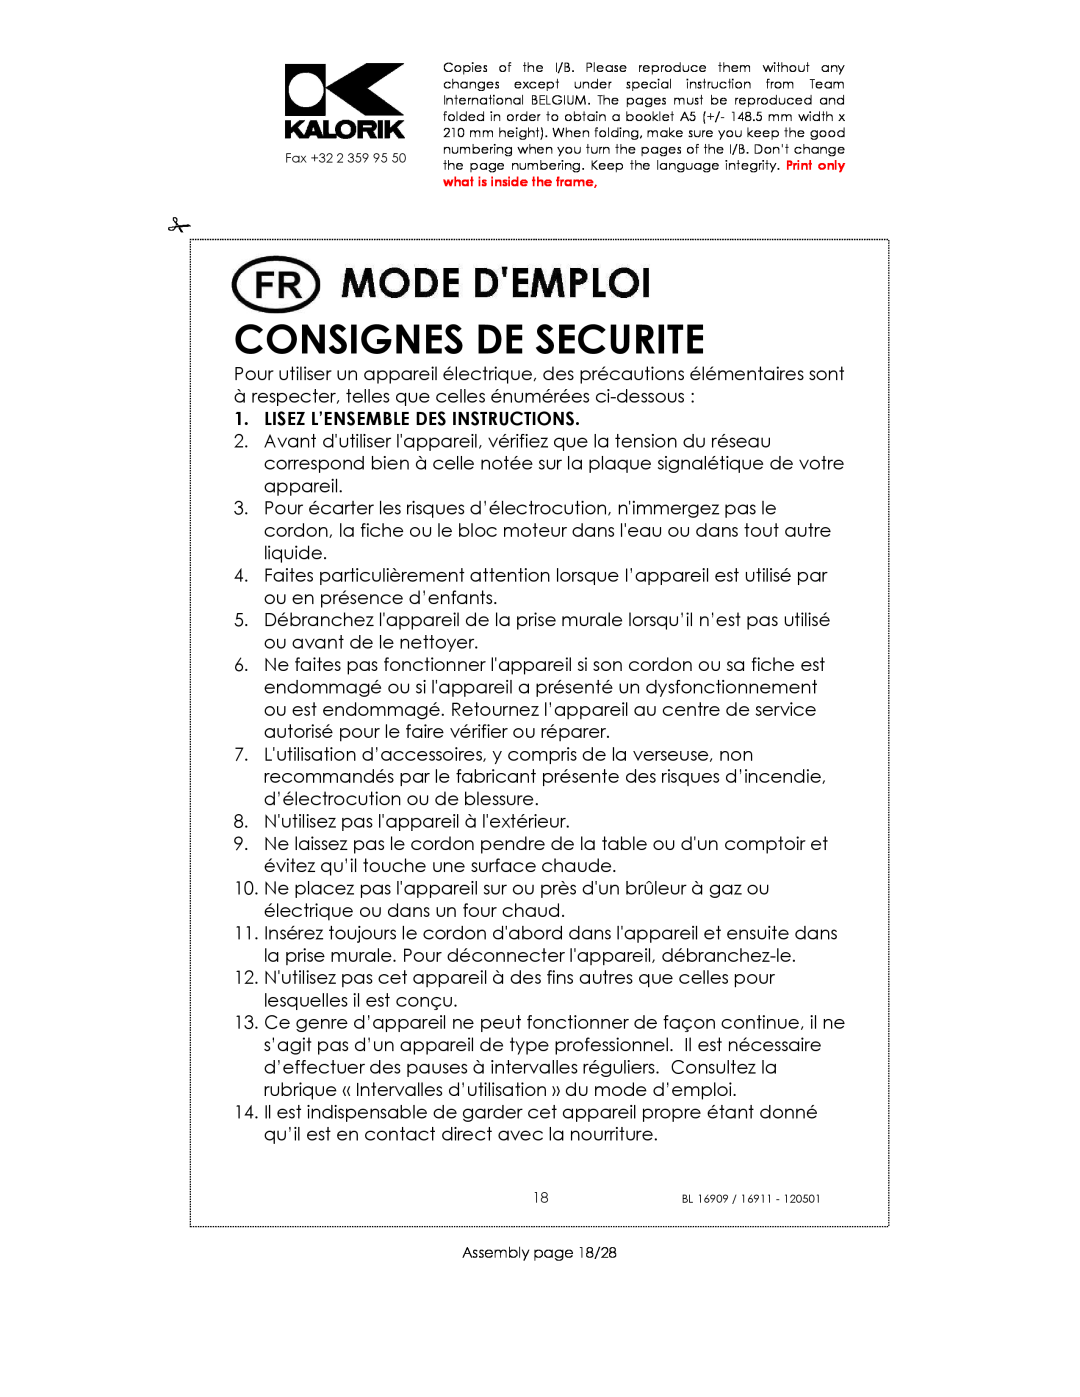 Kalorik usk bl 16909, 33029, 16911 manual Consignes De Securite, Lisez L’Ensemble Des Instructions 